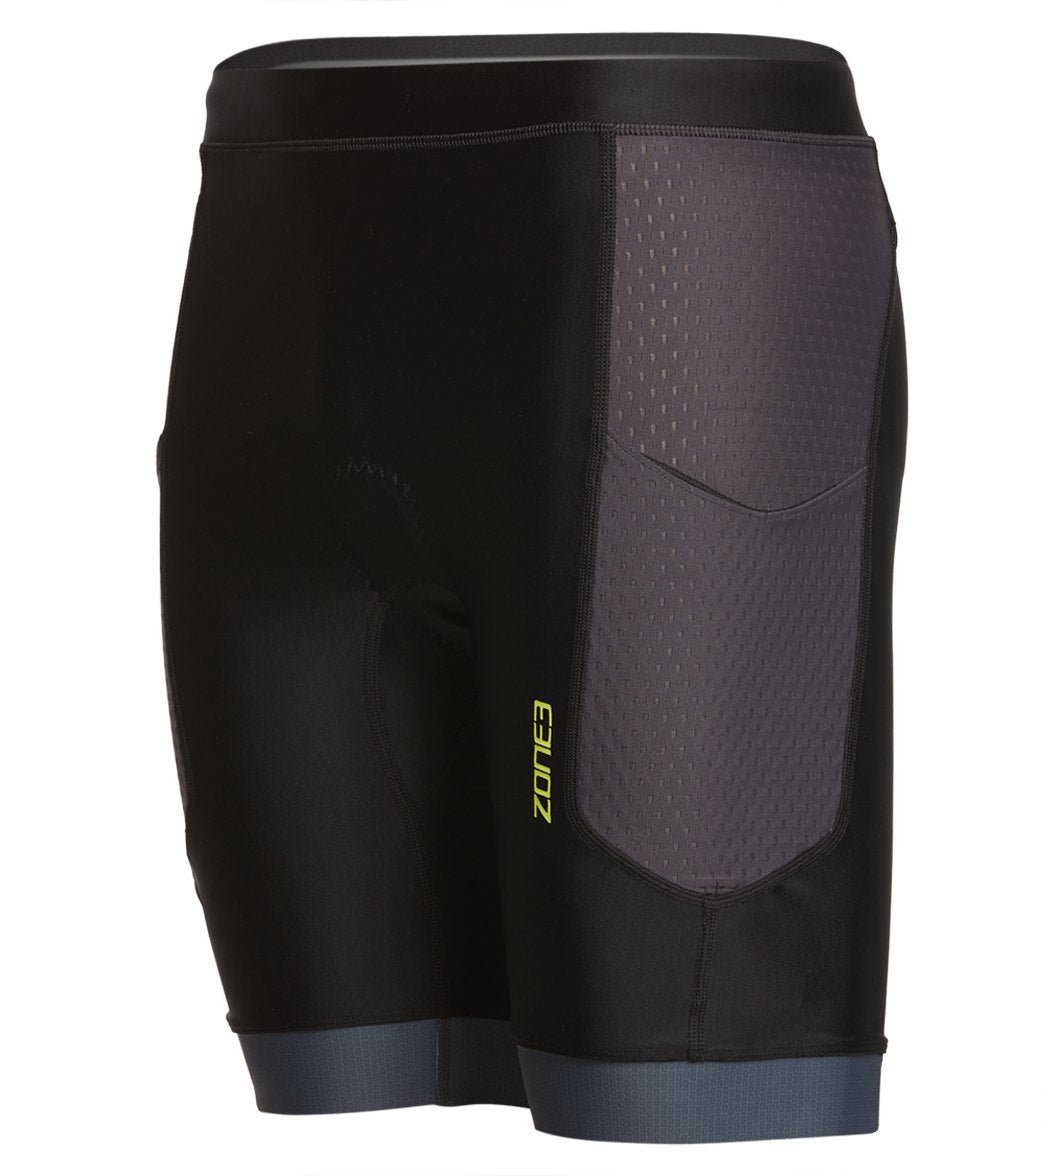 Zone3 Men's Aquaflo Plus Tri Shorts - Black/Grey/Neon Green Small - Swimoutlet.com